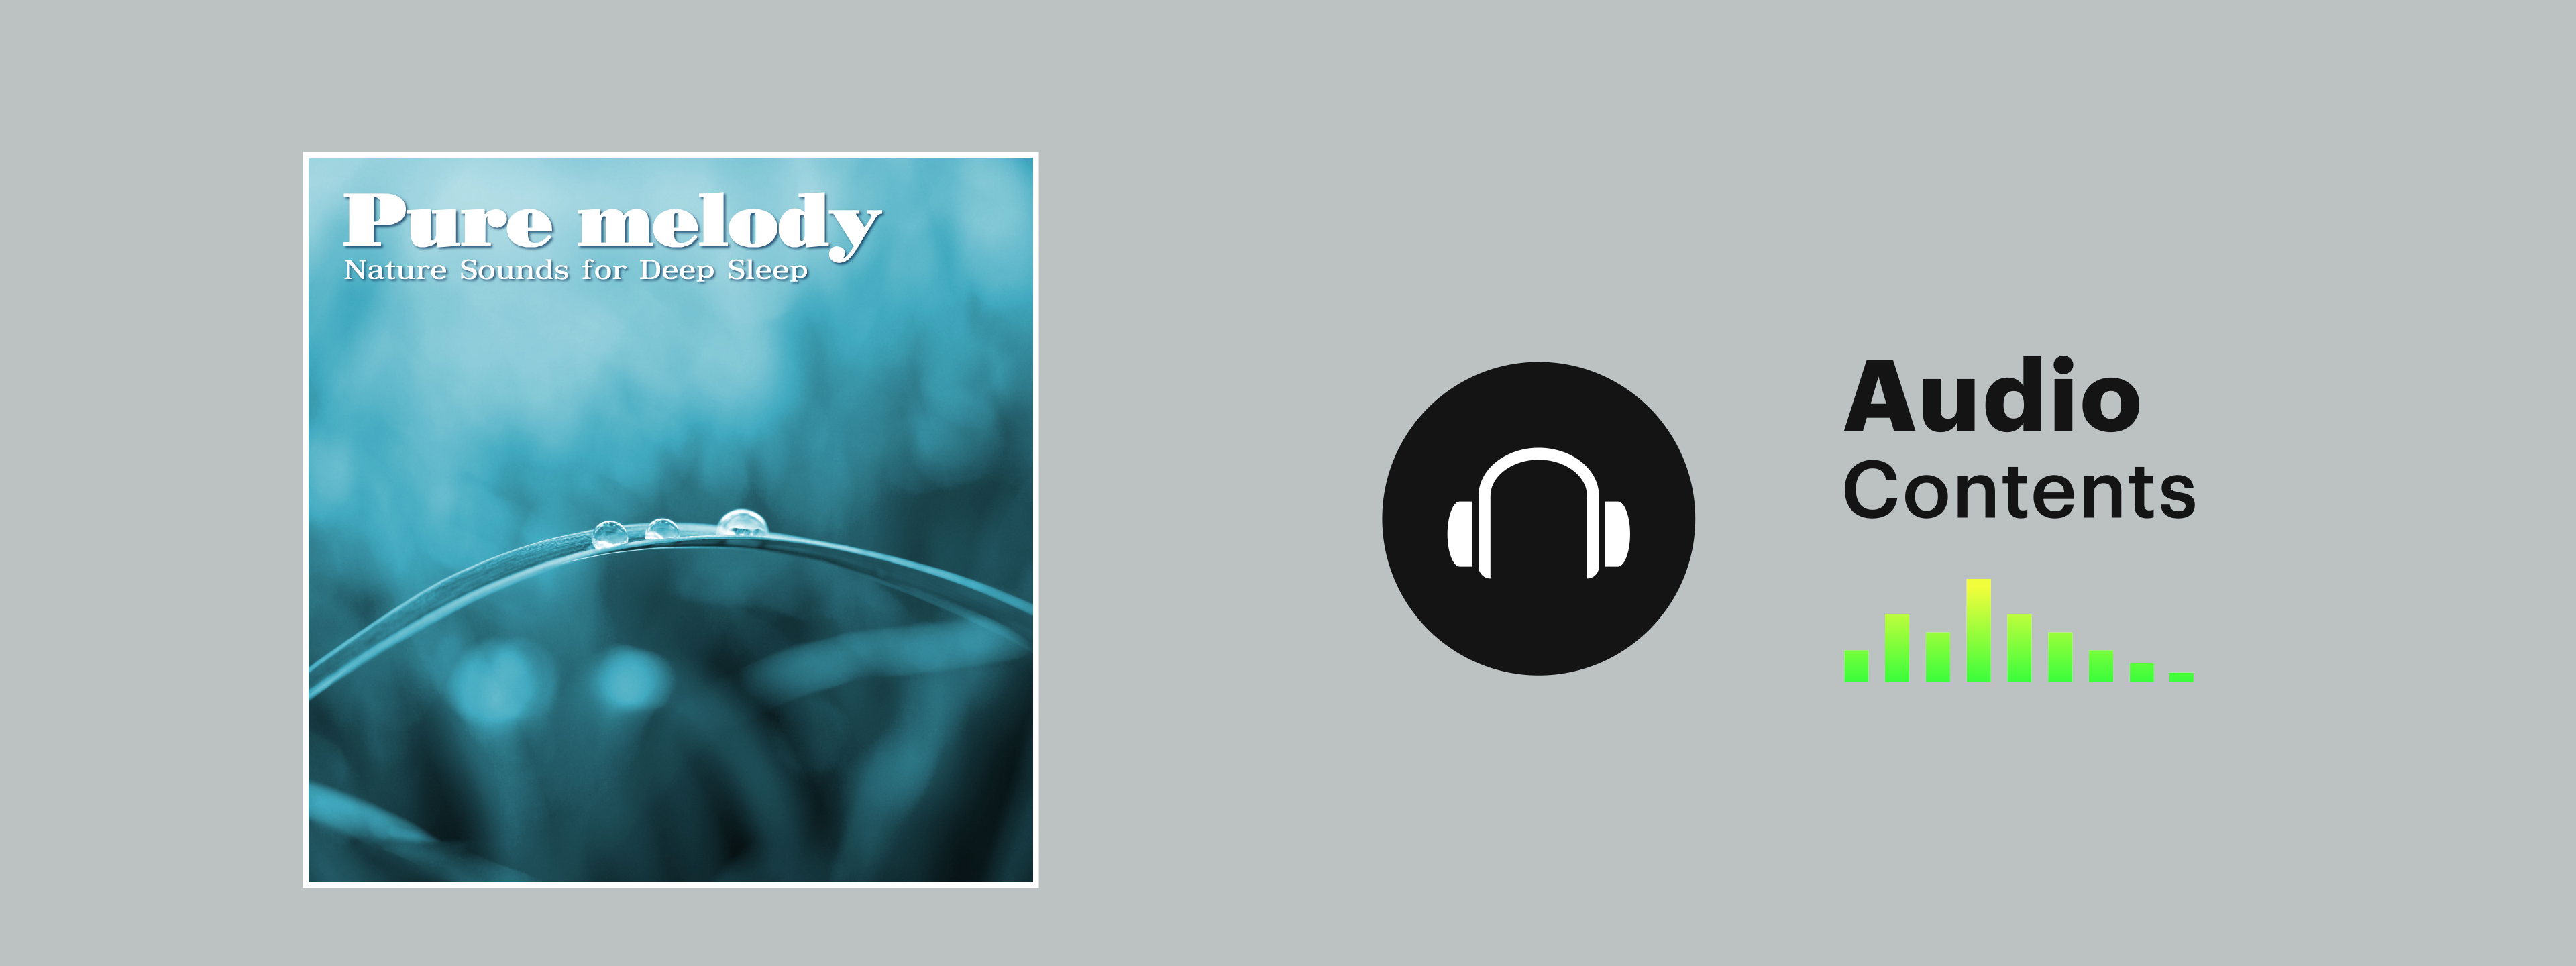 どこまでも純粋な癒し音楽】Pure melody -Nature Sounds for Deep Sleep- | Hulu(フールー)